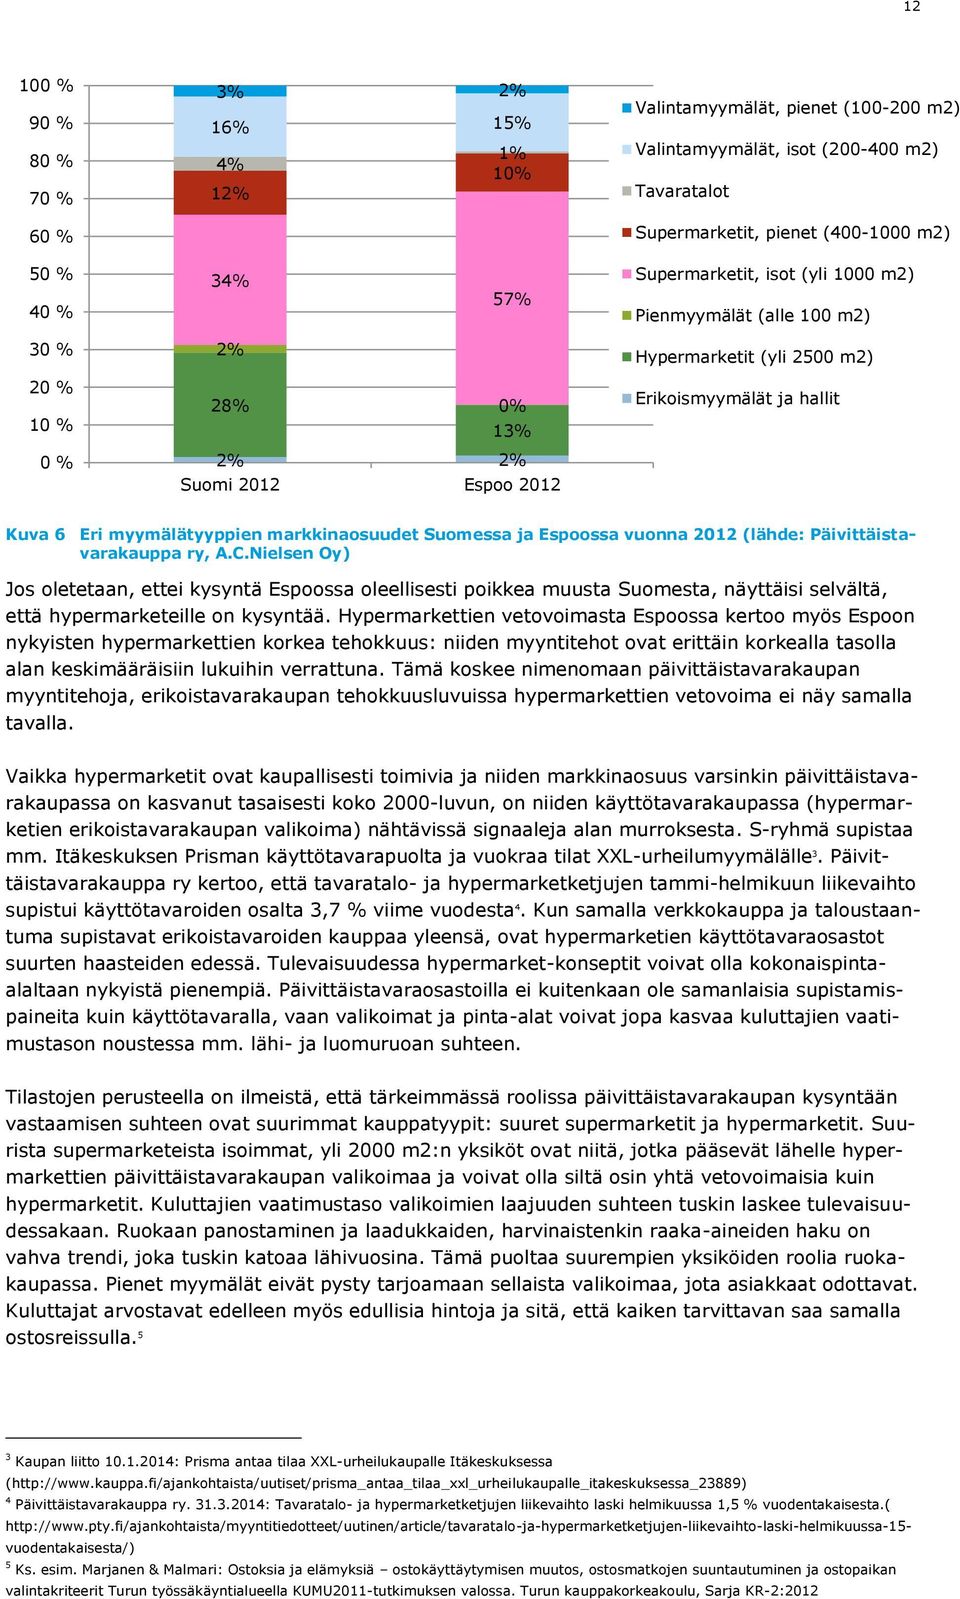 myymälätyyppien markkinaosuudet Suomessa ja Espoossa vuonna 2012 (lähde: Päivittäistavarakauppa ry, A.C.